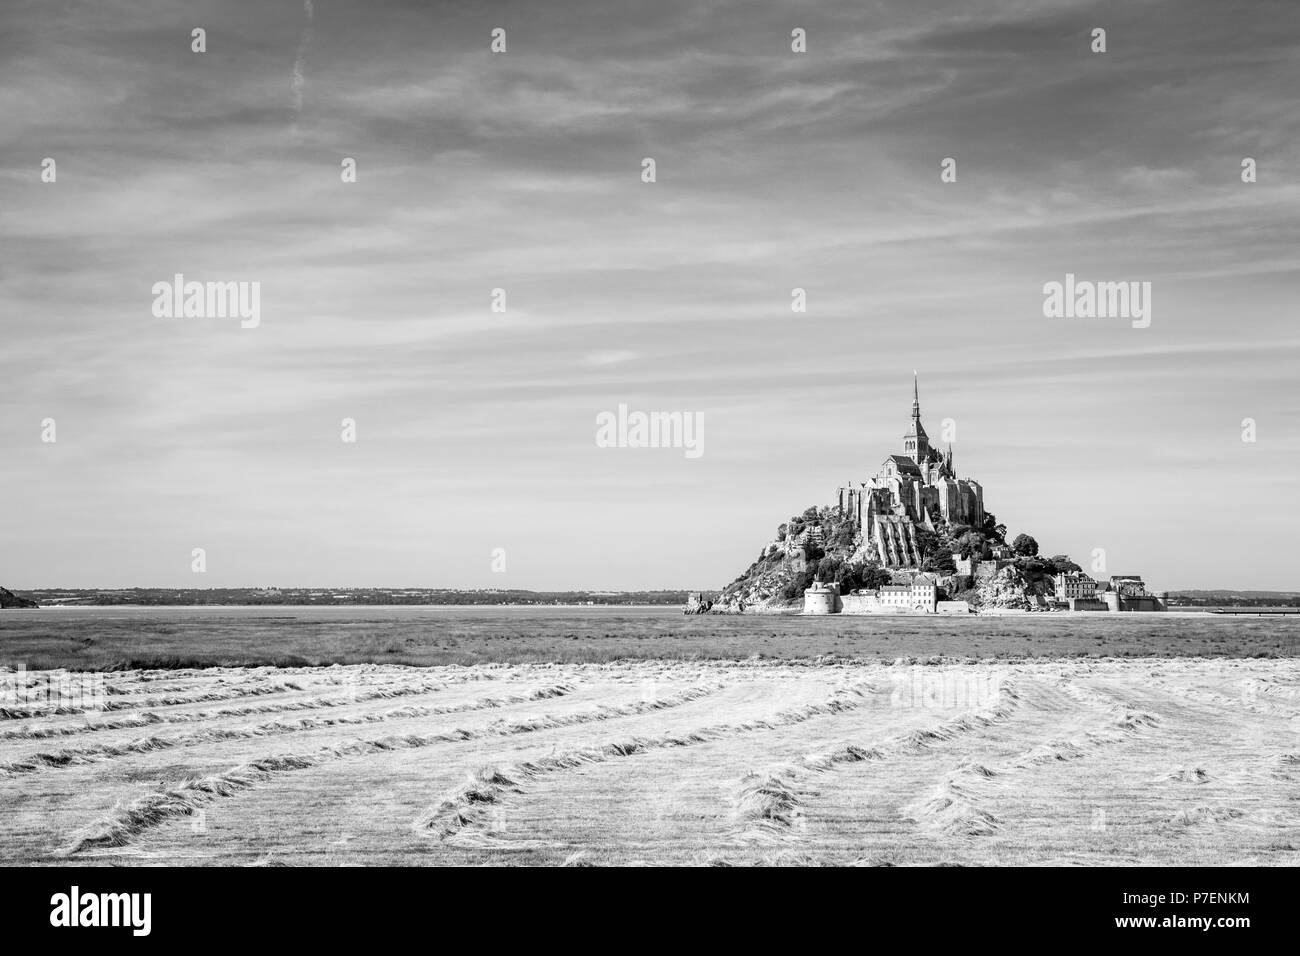 Le Mont Saint-Michel, l'île de marée en Normandie, France, avec séchage des andains de foin dans un champ en premier plan sous un ciel bleu avec des nuages fibreux. Banque D'Images